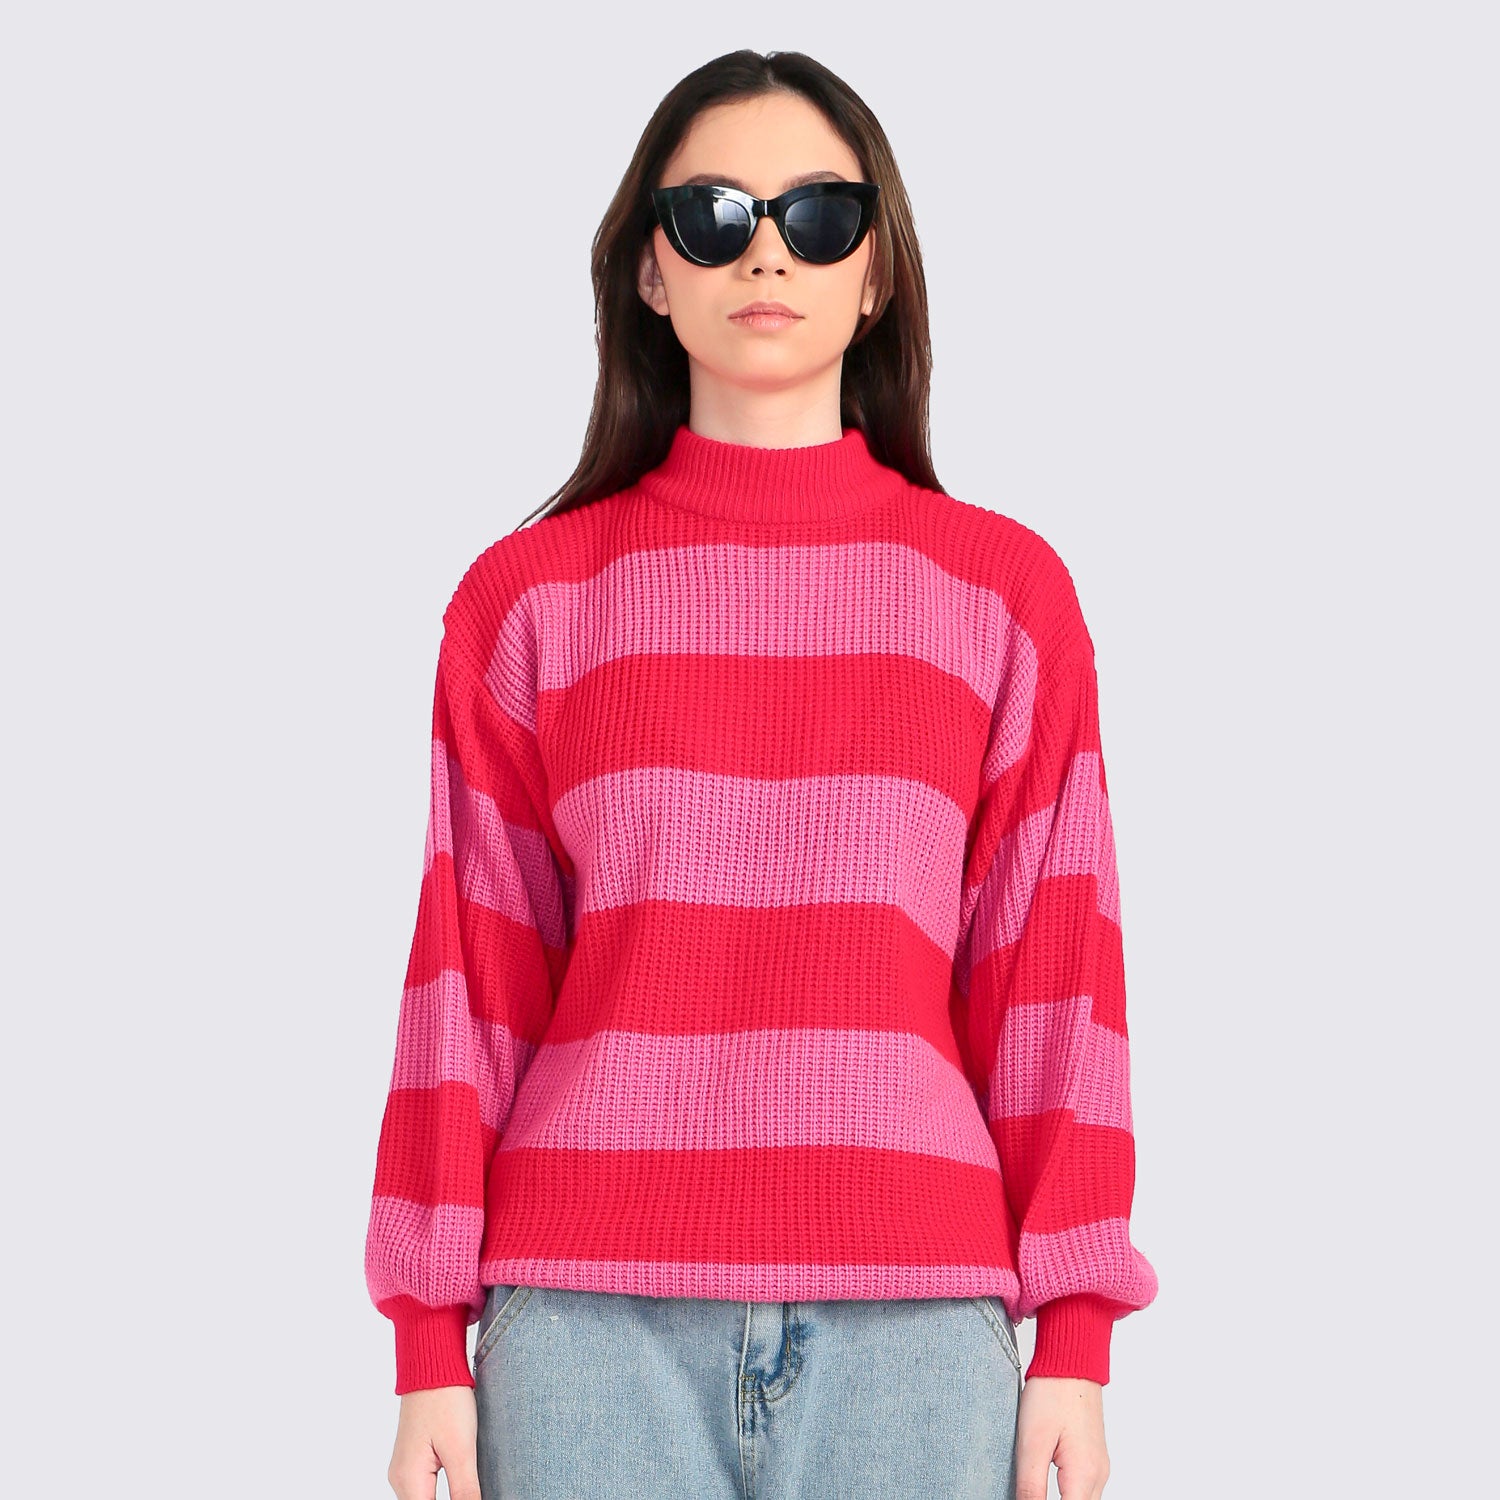 ​Tango Stripes Sweater Red Pink - Tuff Puff